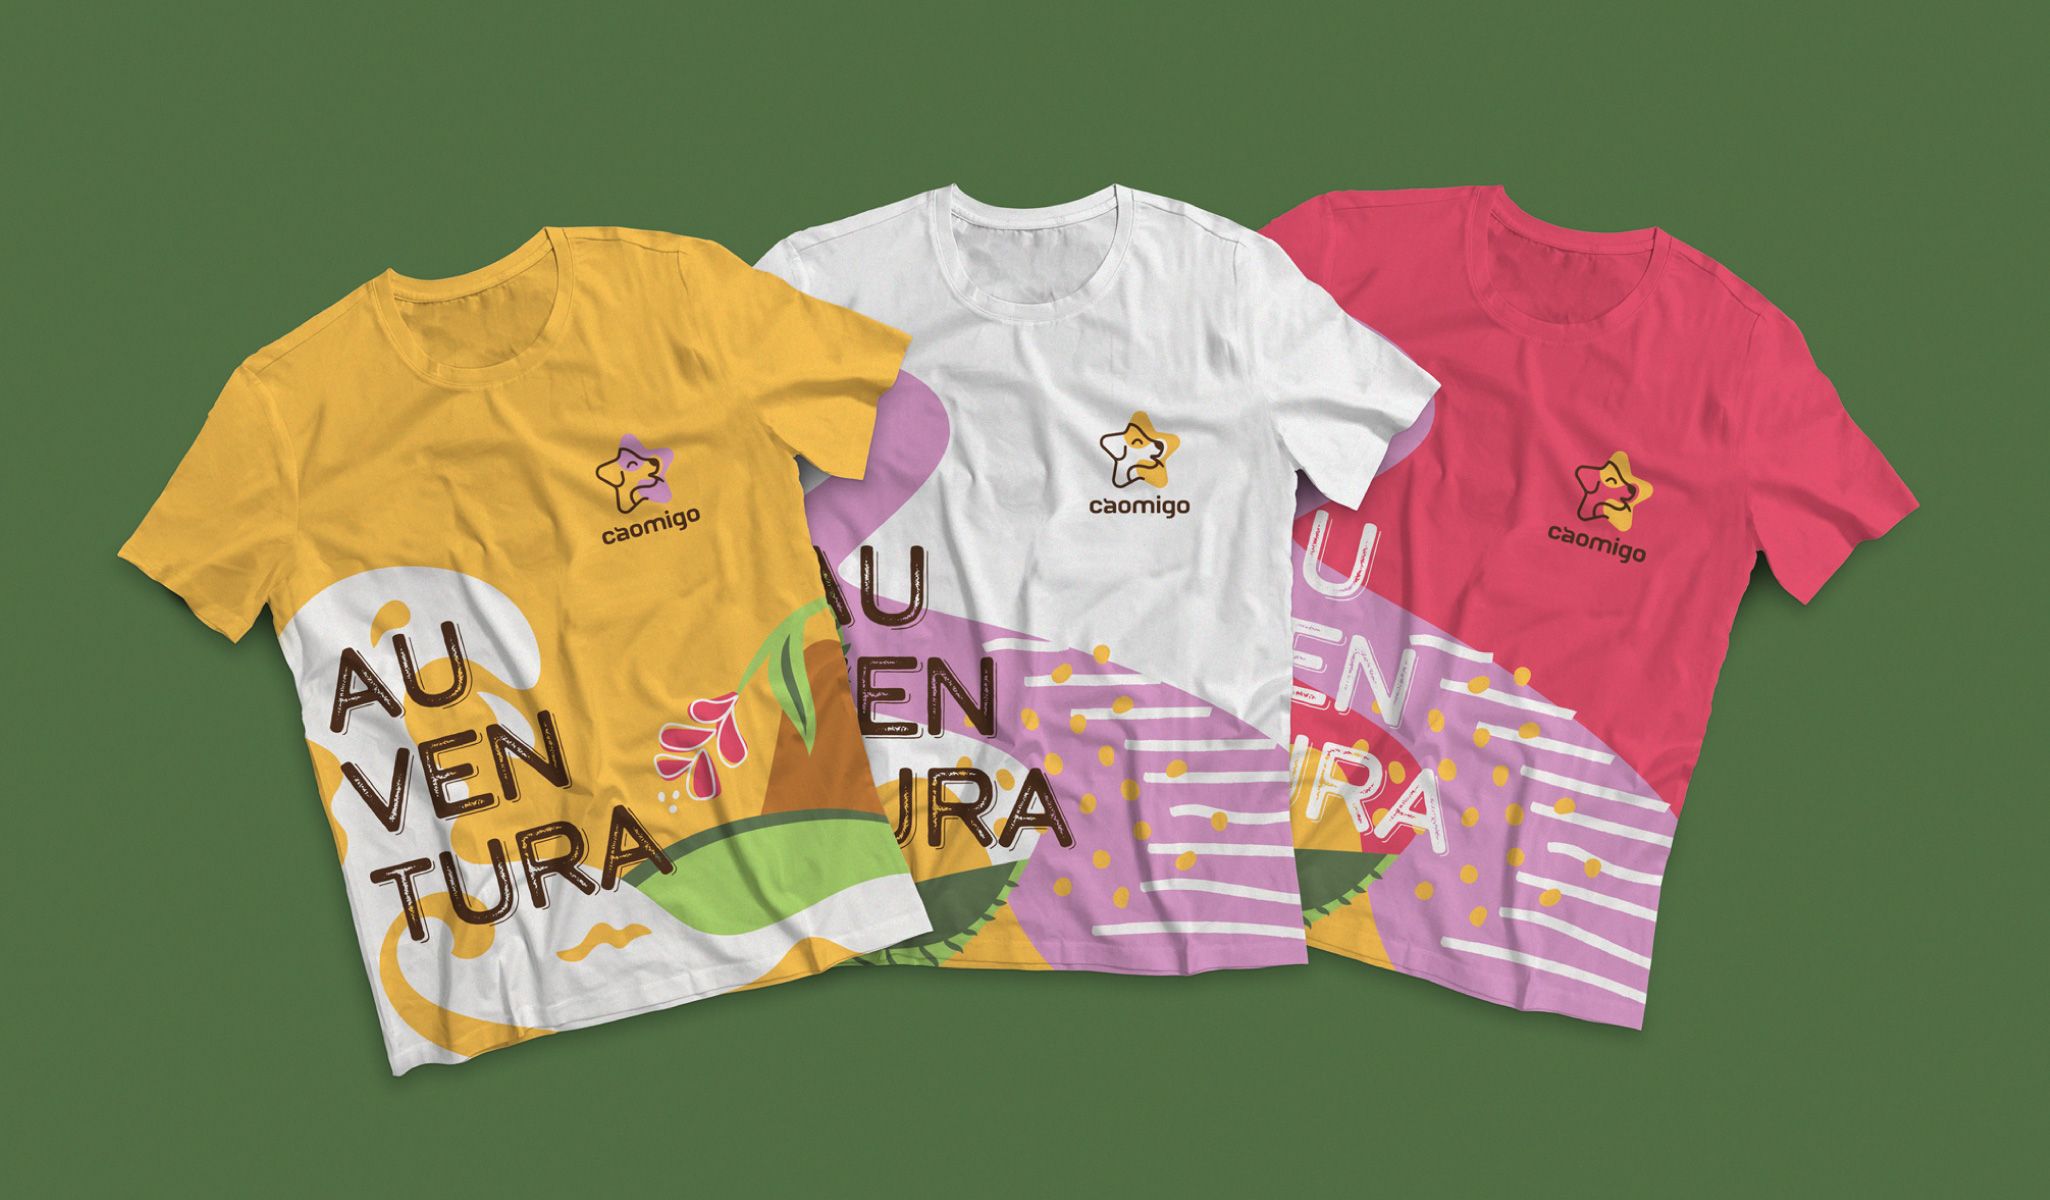 Imagem de três camisetas com a identidade visual da Cãomigo, para identificar a equipe e vender como produto da marca na loja.